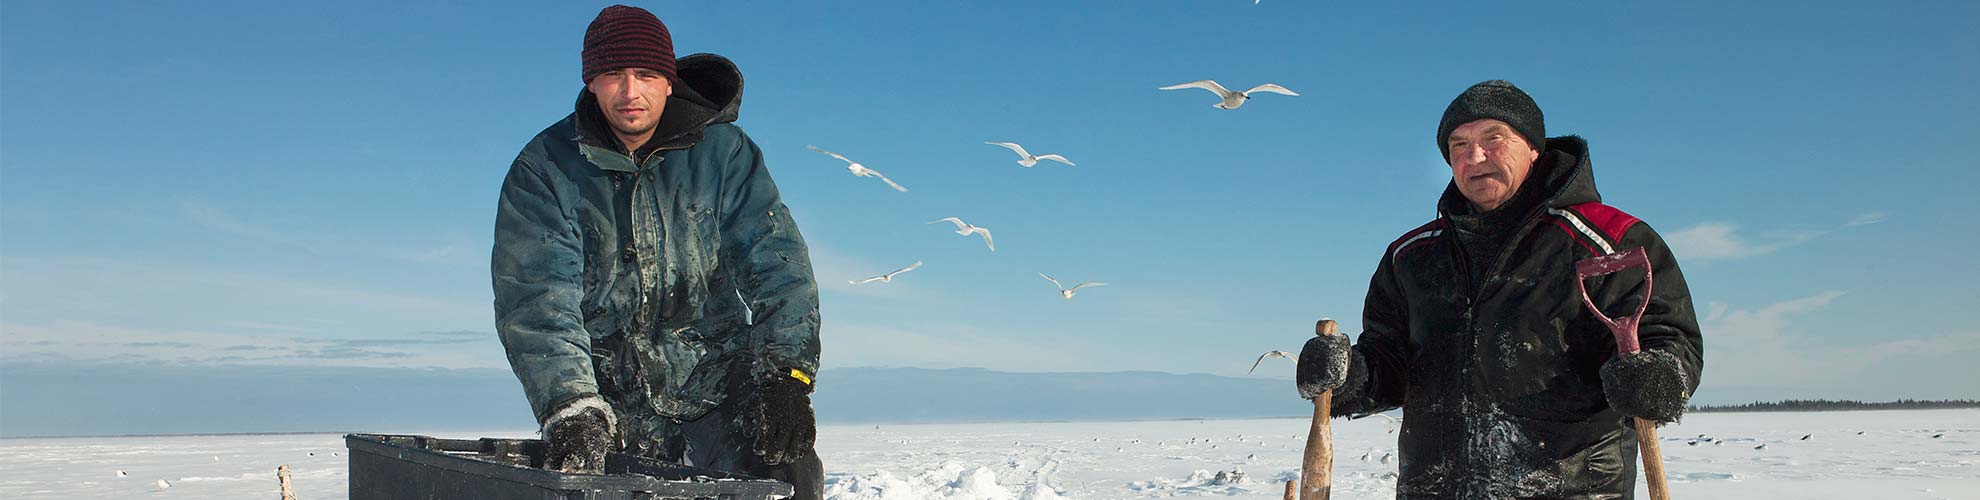 Deux hommes en vêtements d’hiver debout dans la neige, avec des oiseaux blancs volant en arrière-plan.